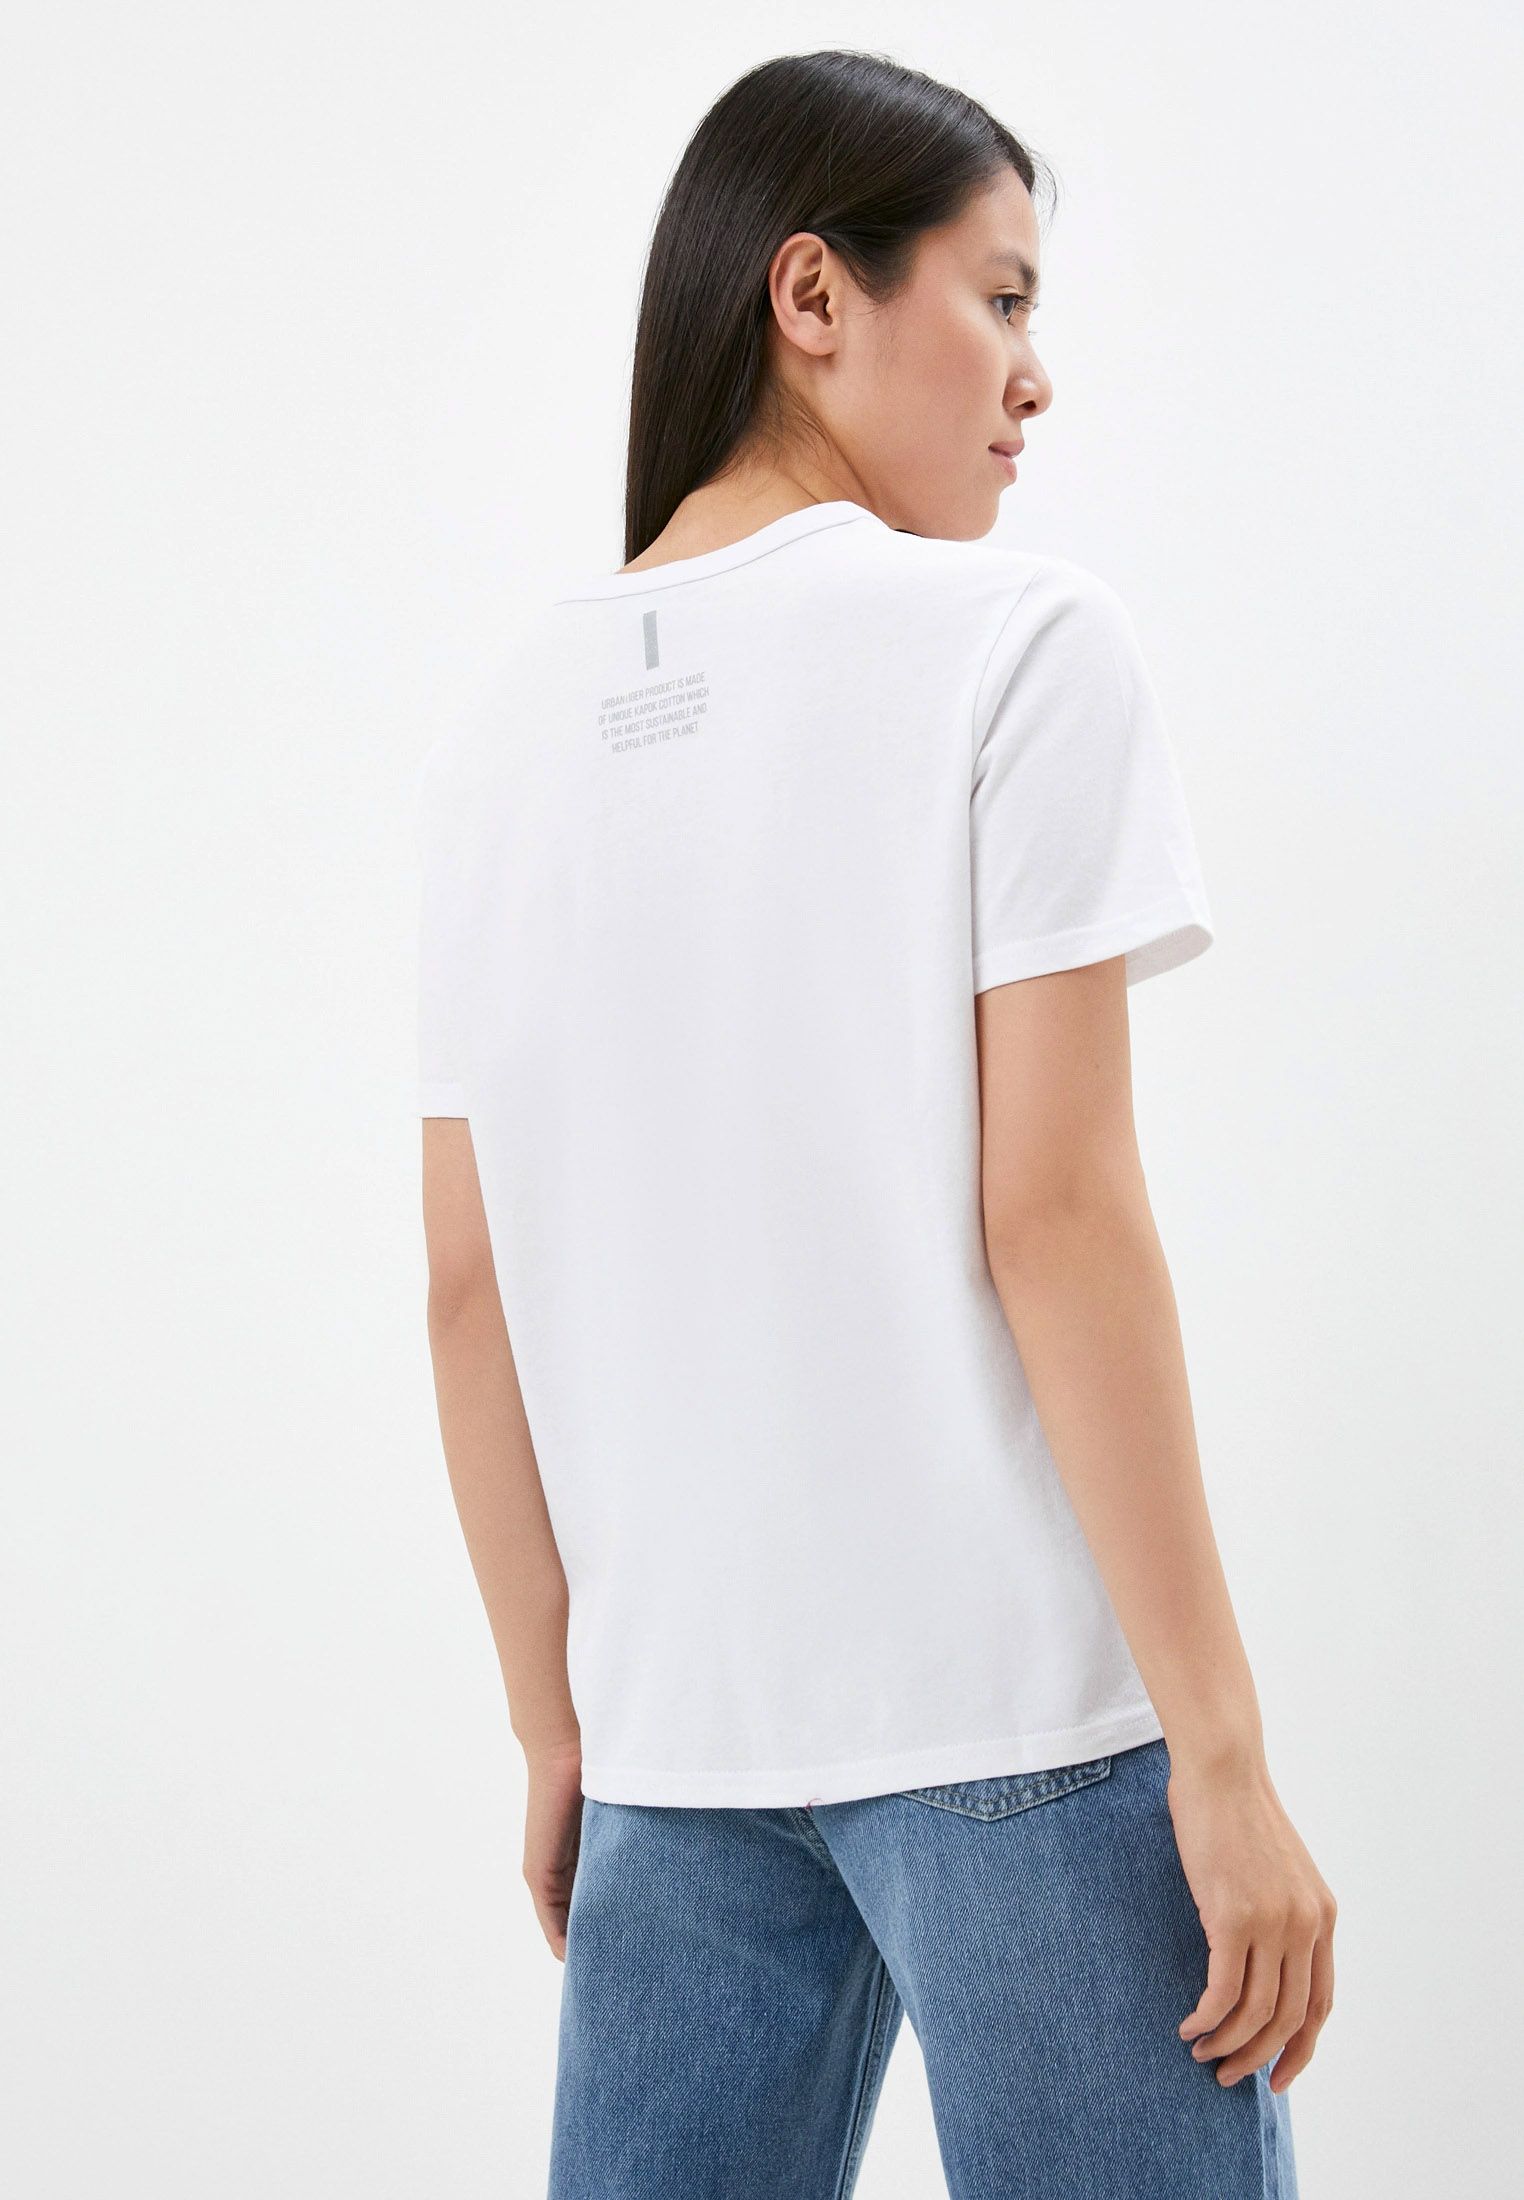 Белая женская футболка с Валентигром. Изображение 2